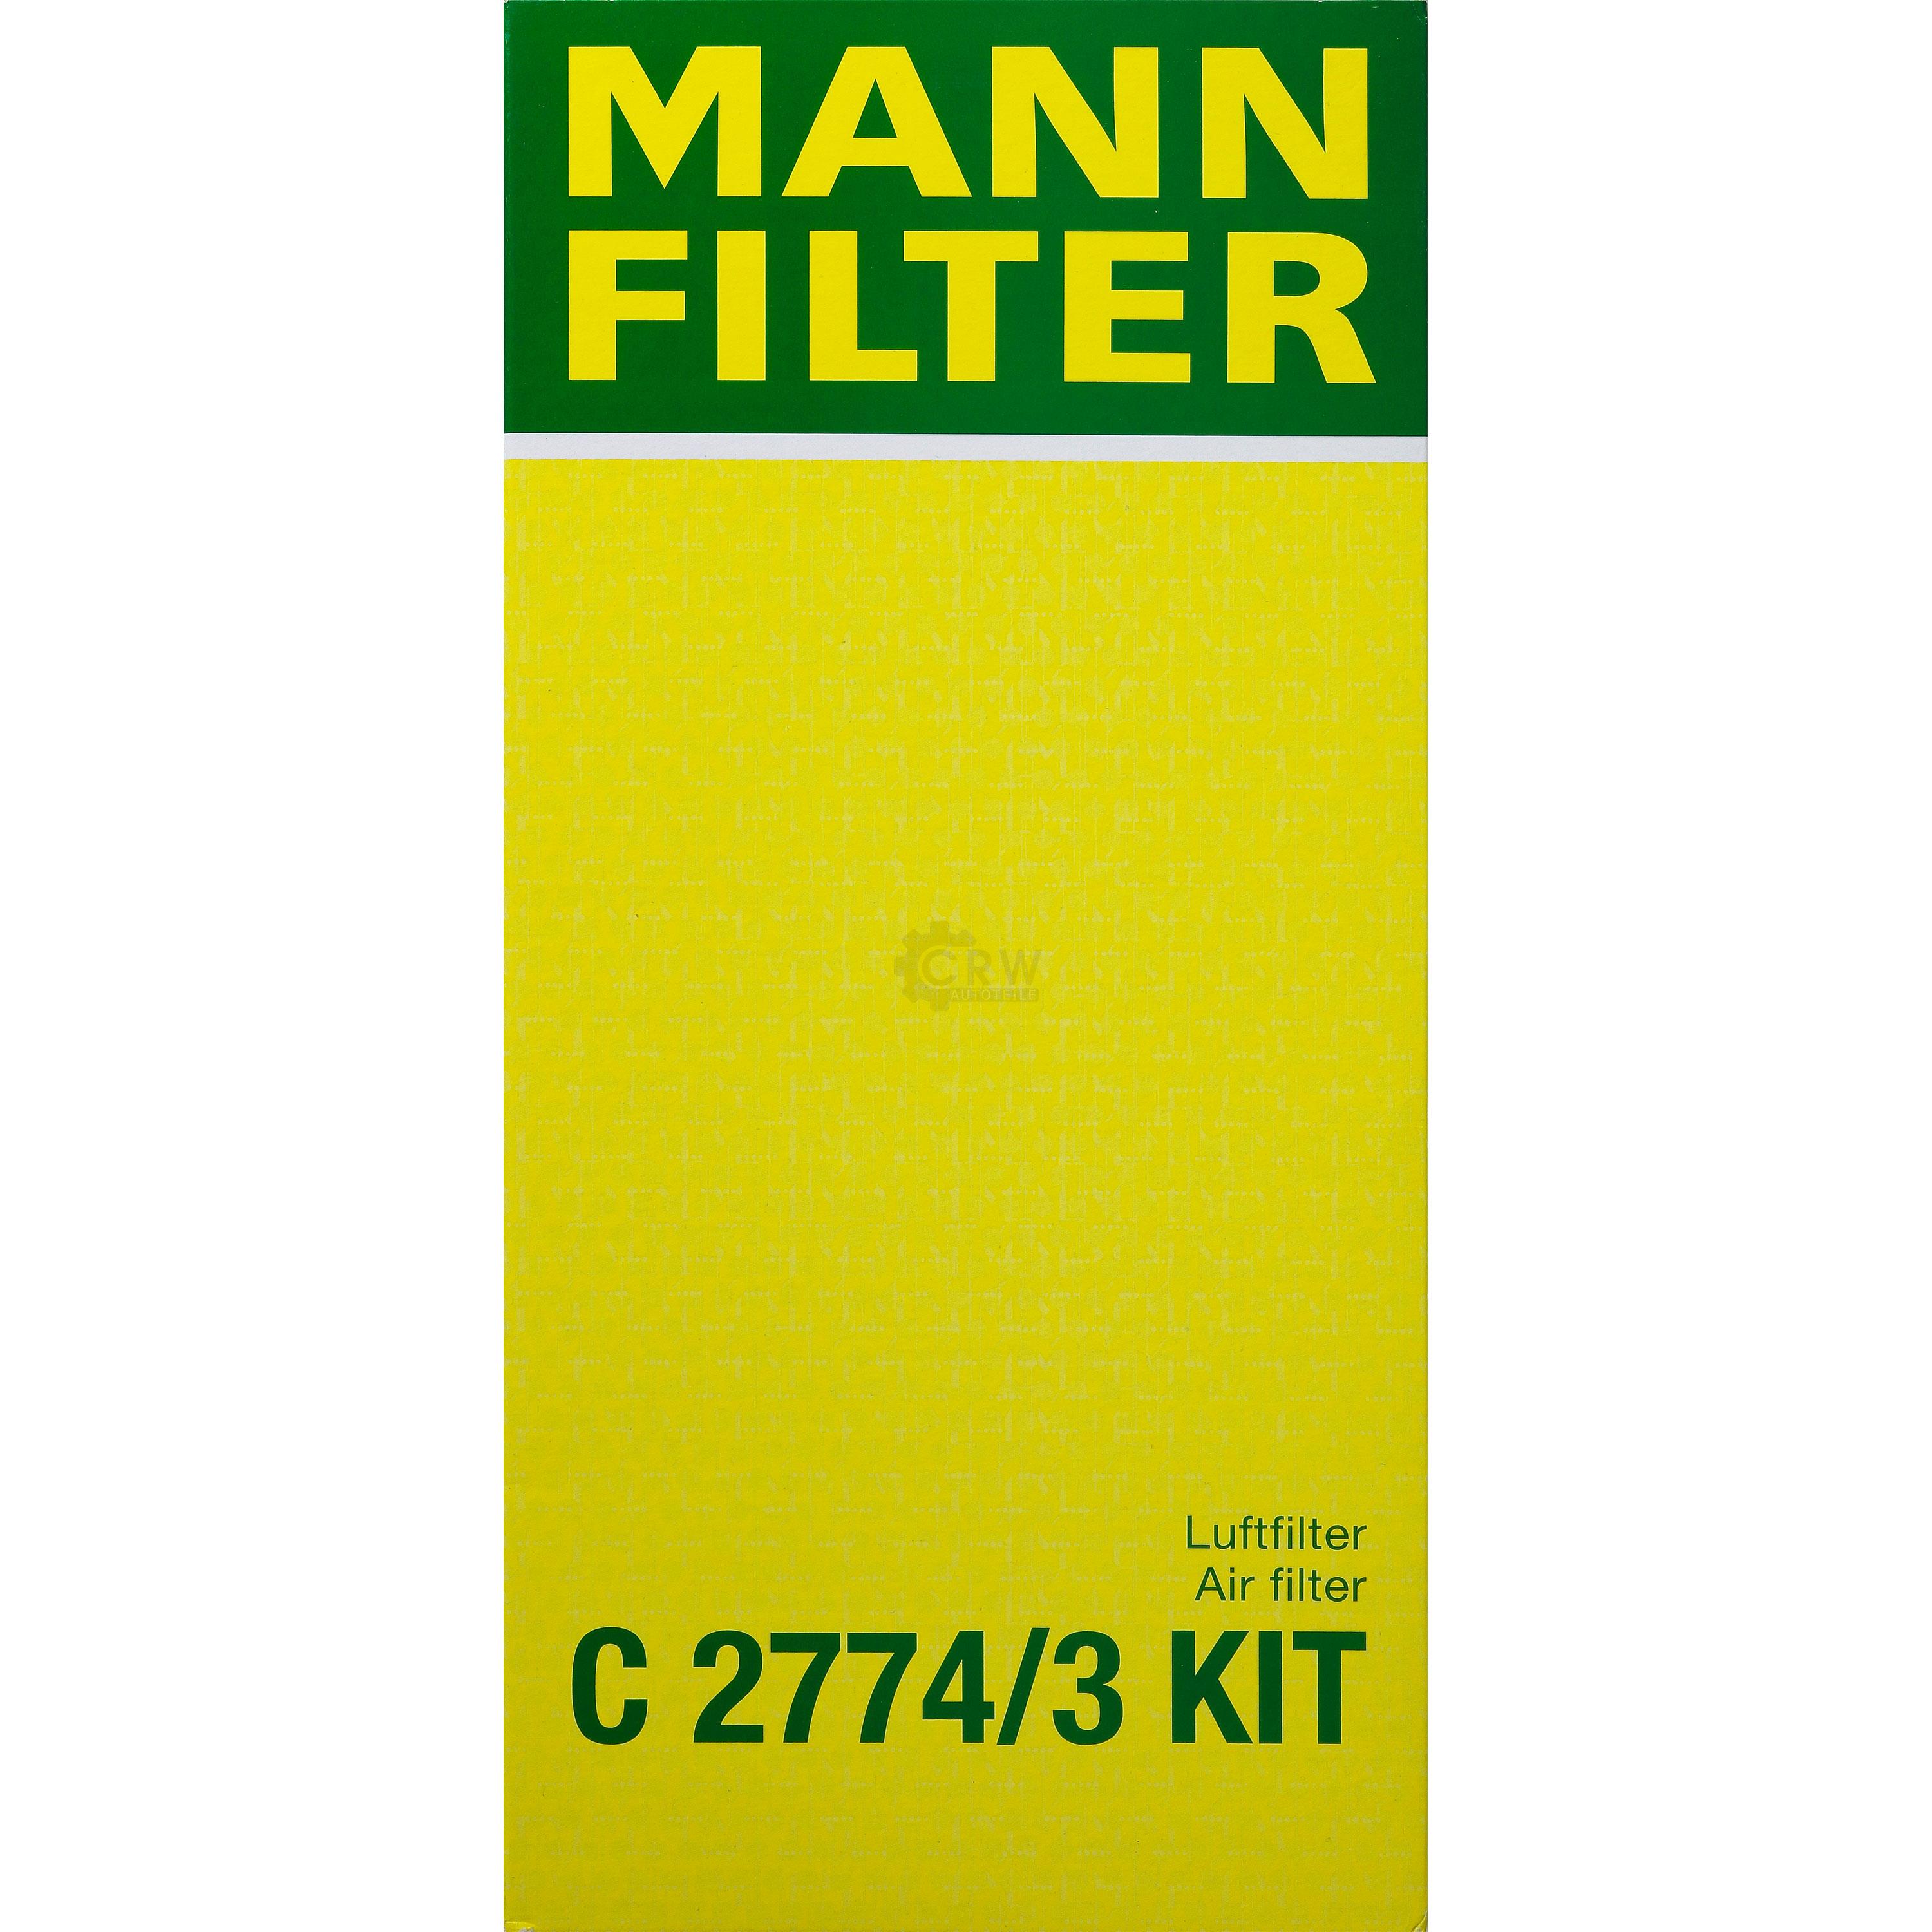 MANN-FILTER Luftfilter für Ford Focus DAW DBW 1.6 16V 1.4 DNW 1.8 P65_ P70_